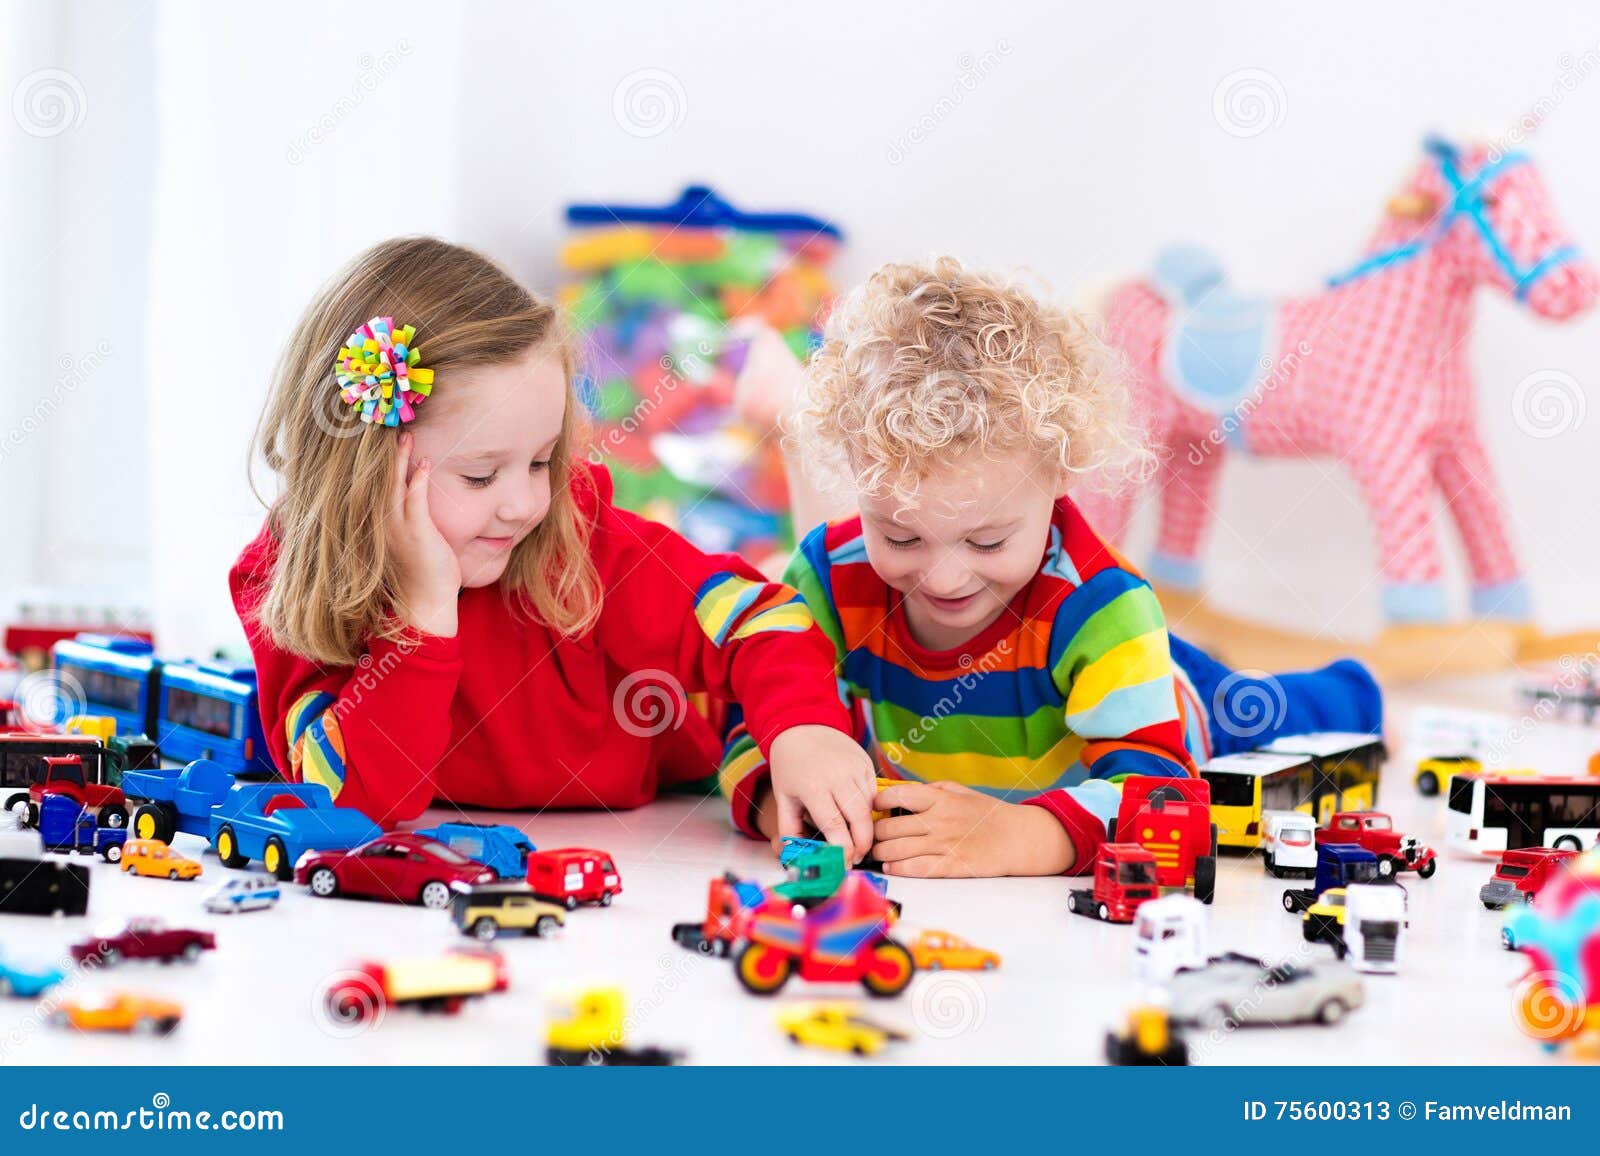 В машинки играем в куклы играем. Дети играют в игрушки. Игрушки на полу. Дети играют в конструктор. Мальчик играет в игрушки.